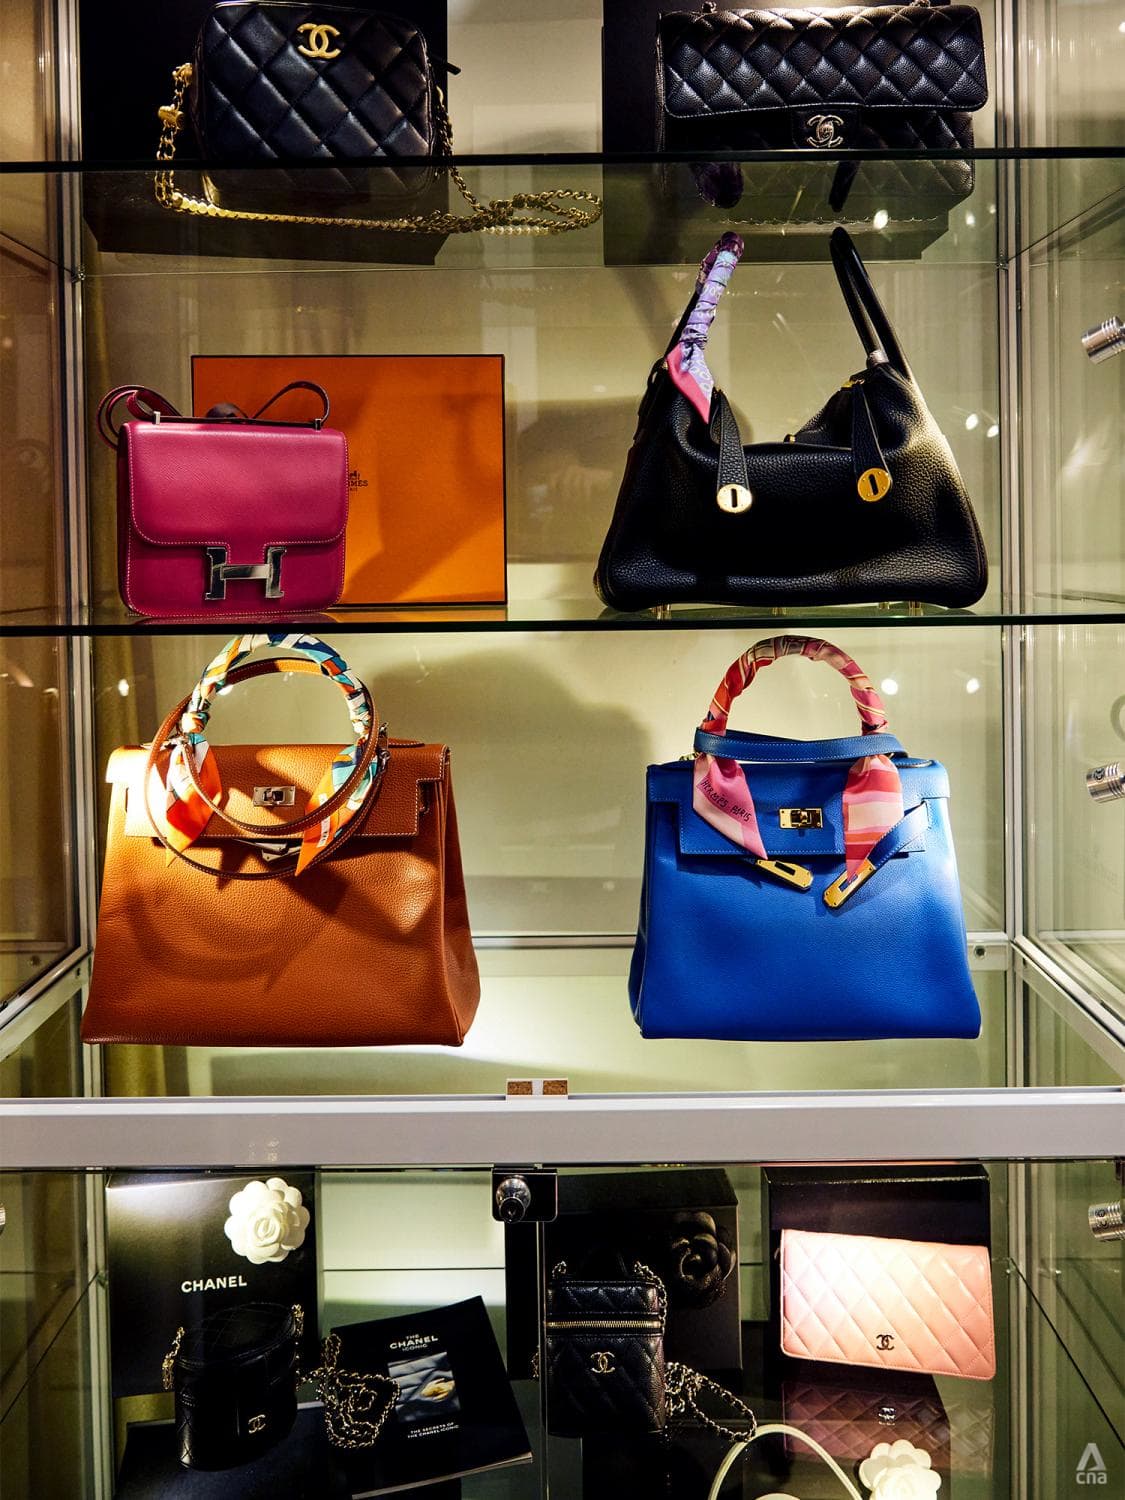 Meet the Singaporean couple collecting Chanel handbags as art pieces ...